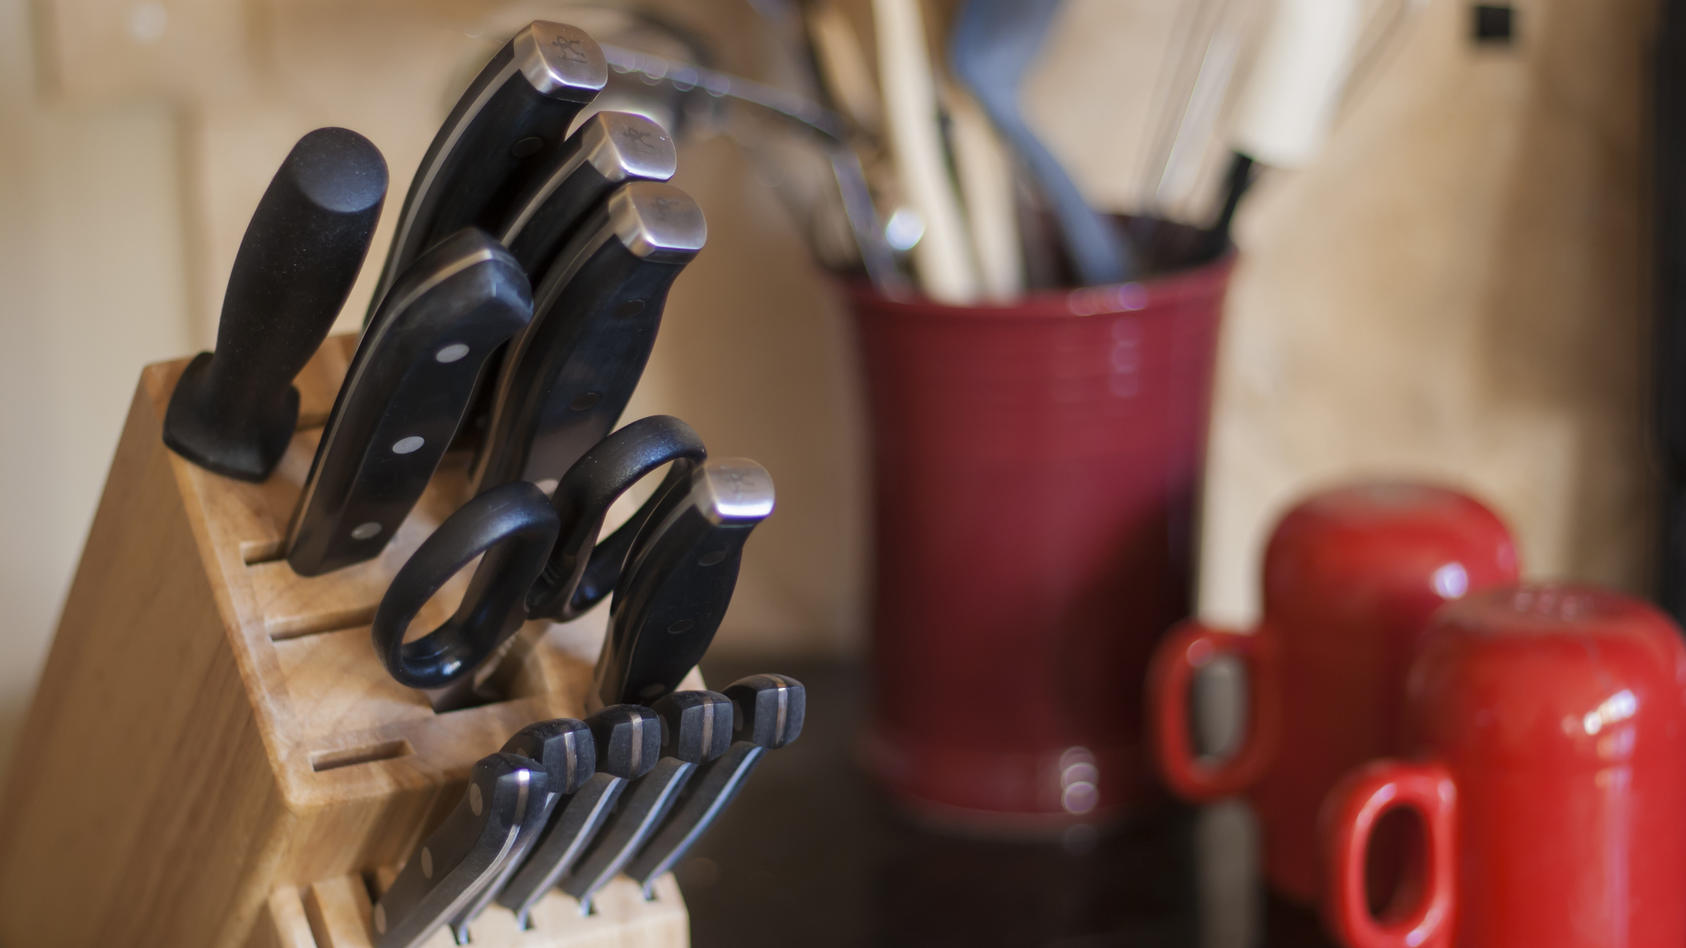 Küchenmesser gibt es in allen möglichen Größen und Formen - wir geben einen Überblick über die wichtigsten Messerarten.